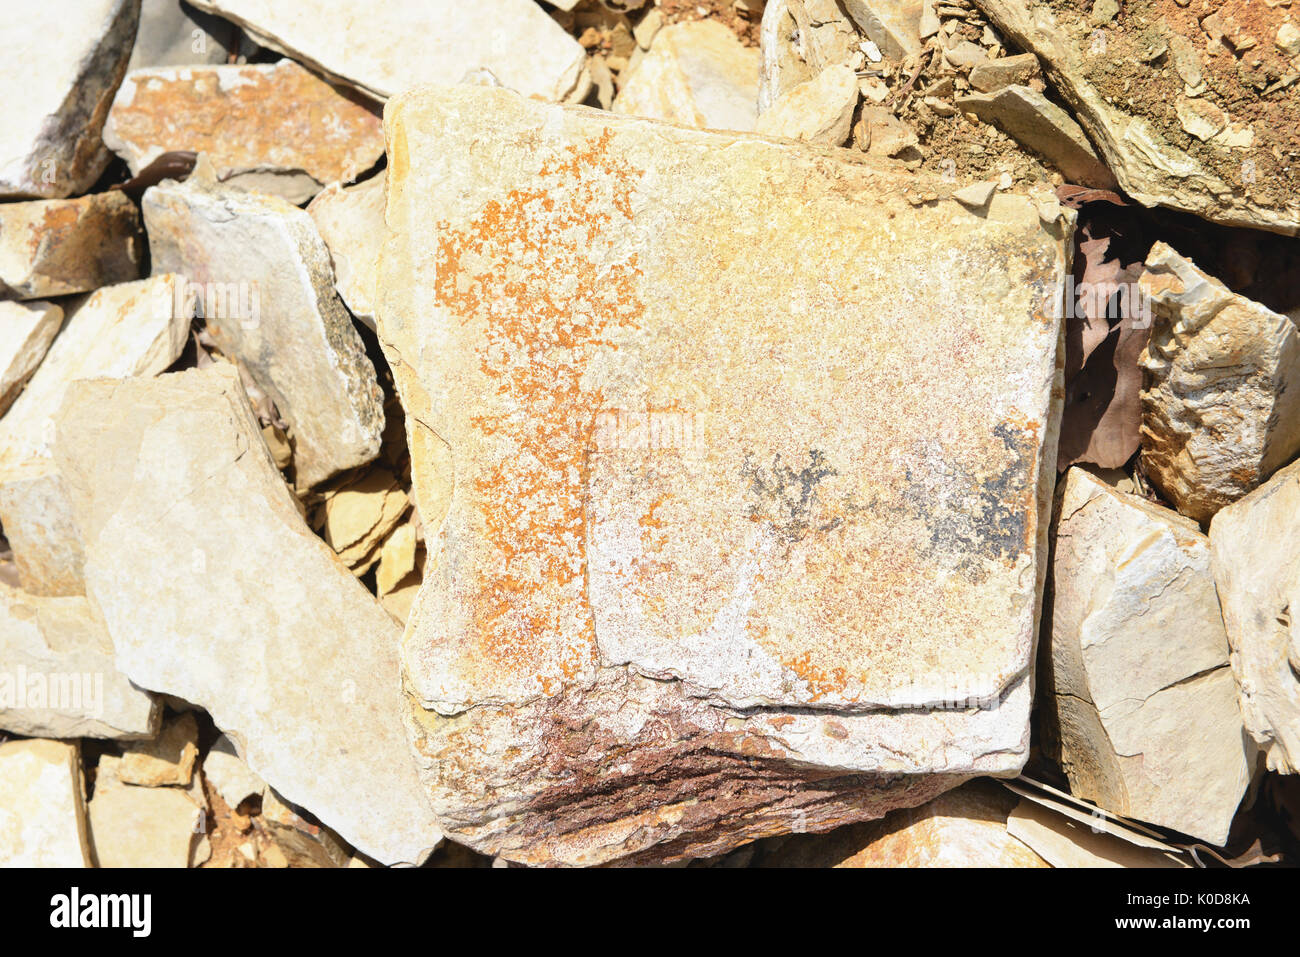 Les minéraux des roches calcaires sur les dendrites de solnhofen horizons plein cadre. Banque D'Images